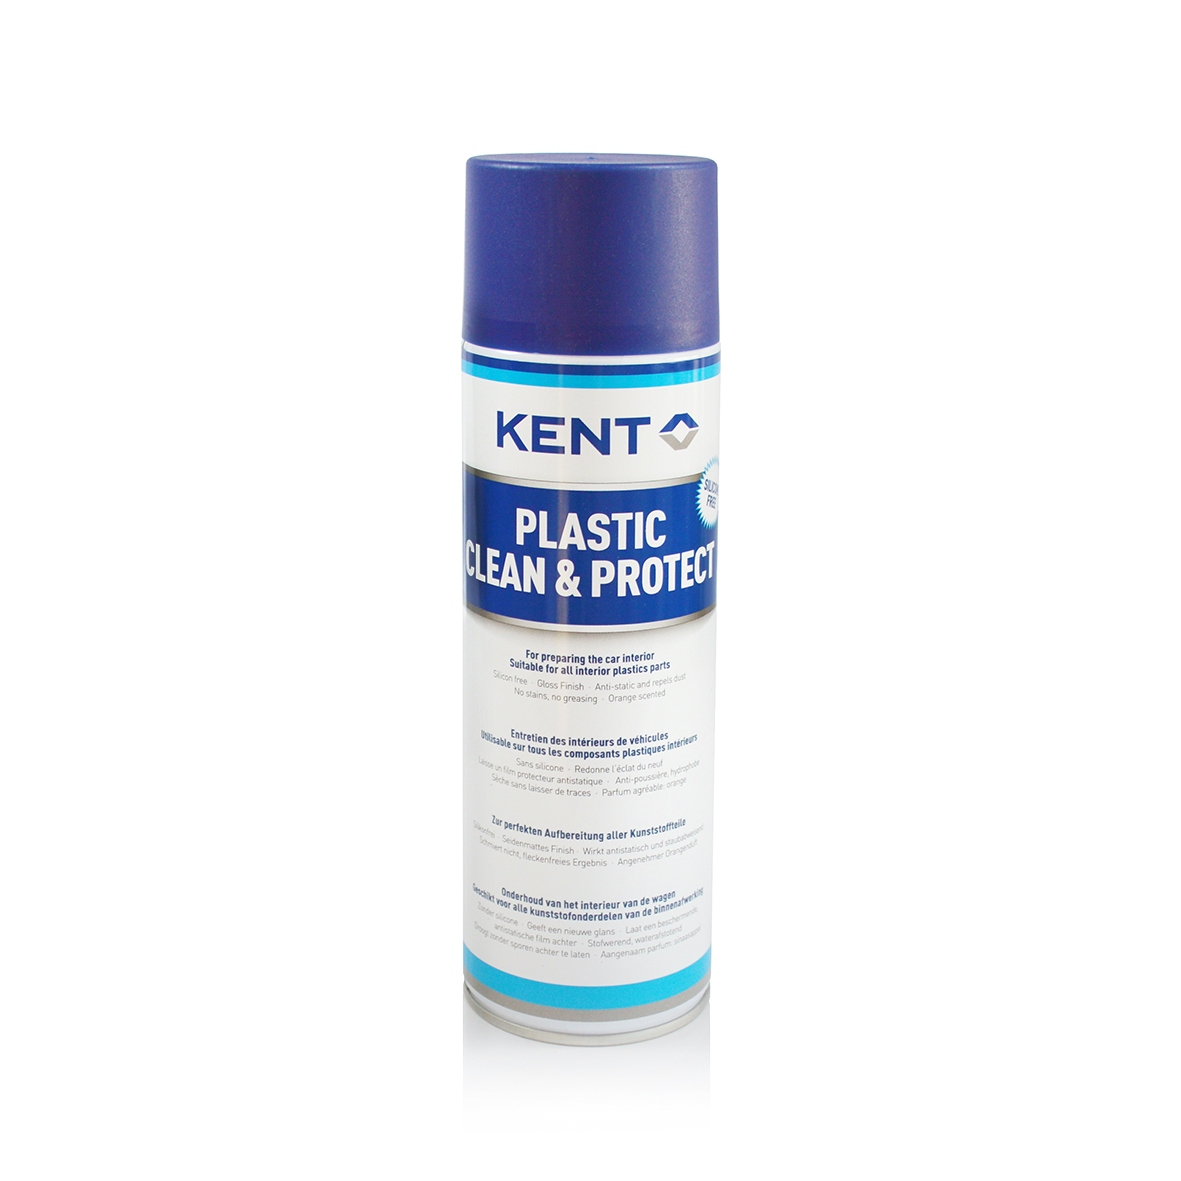 Ein silikonfreies Spray zur Aufbereitung Aller Kunststoffteile im Fahrzeug | Plastic Clean & Protect | Kent | 500 ml